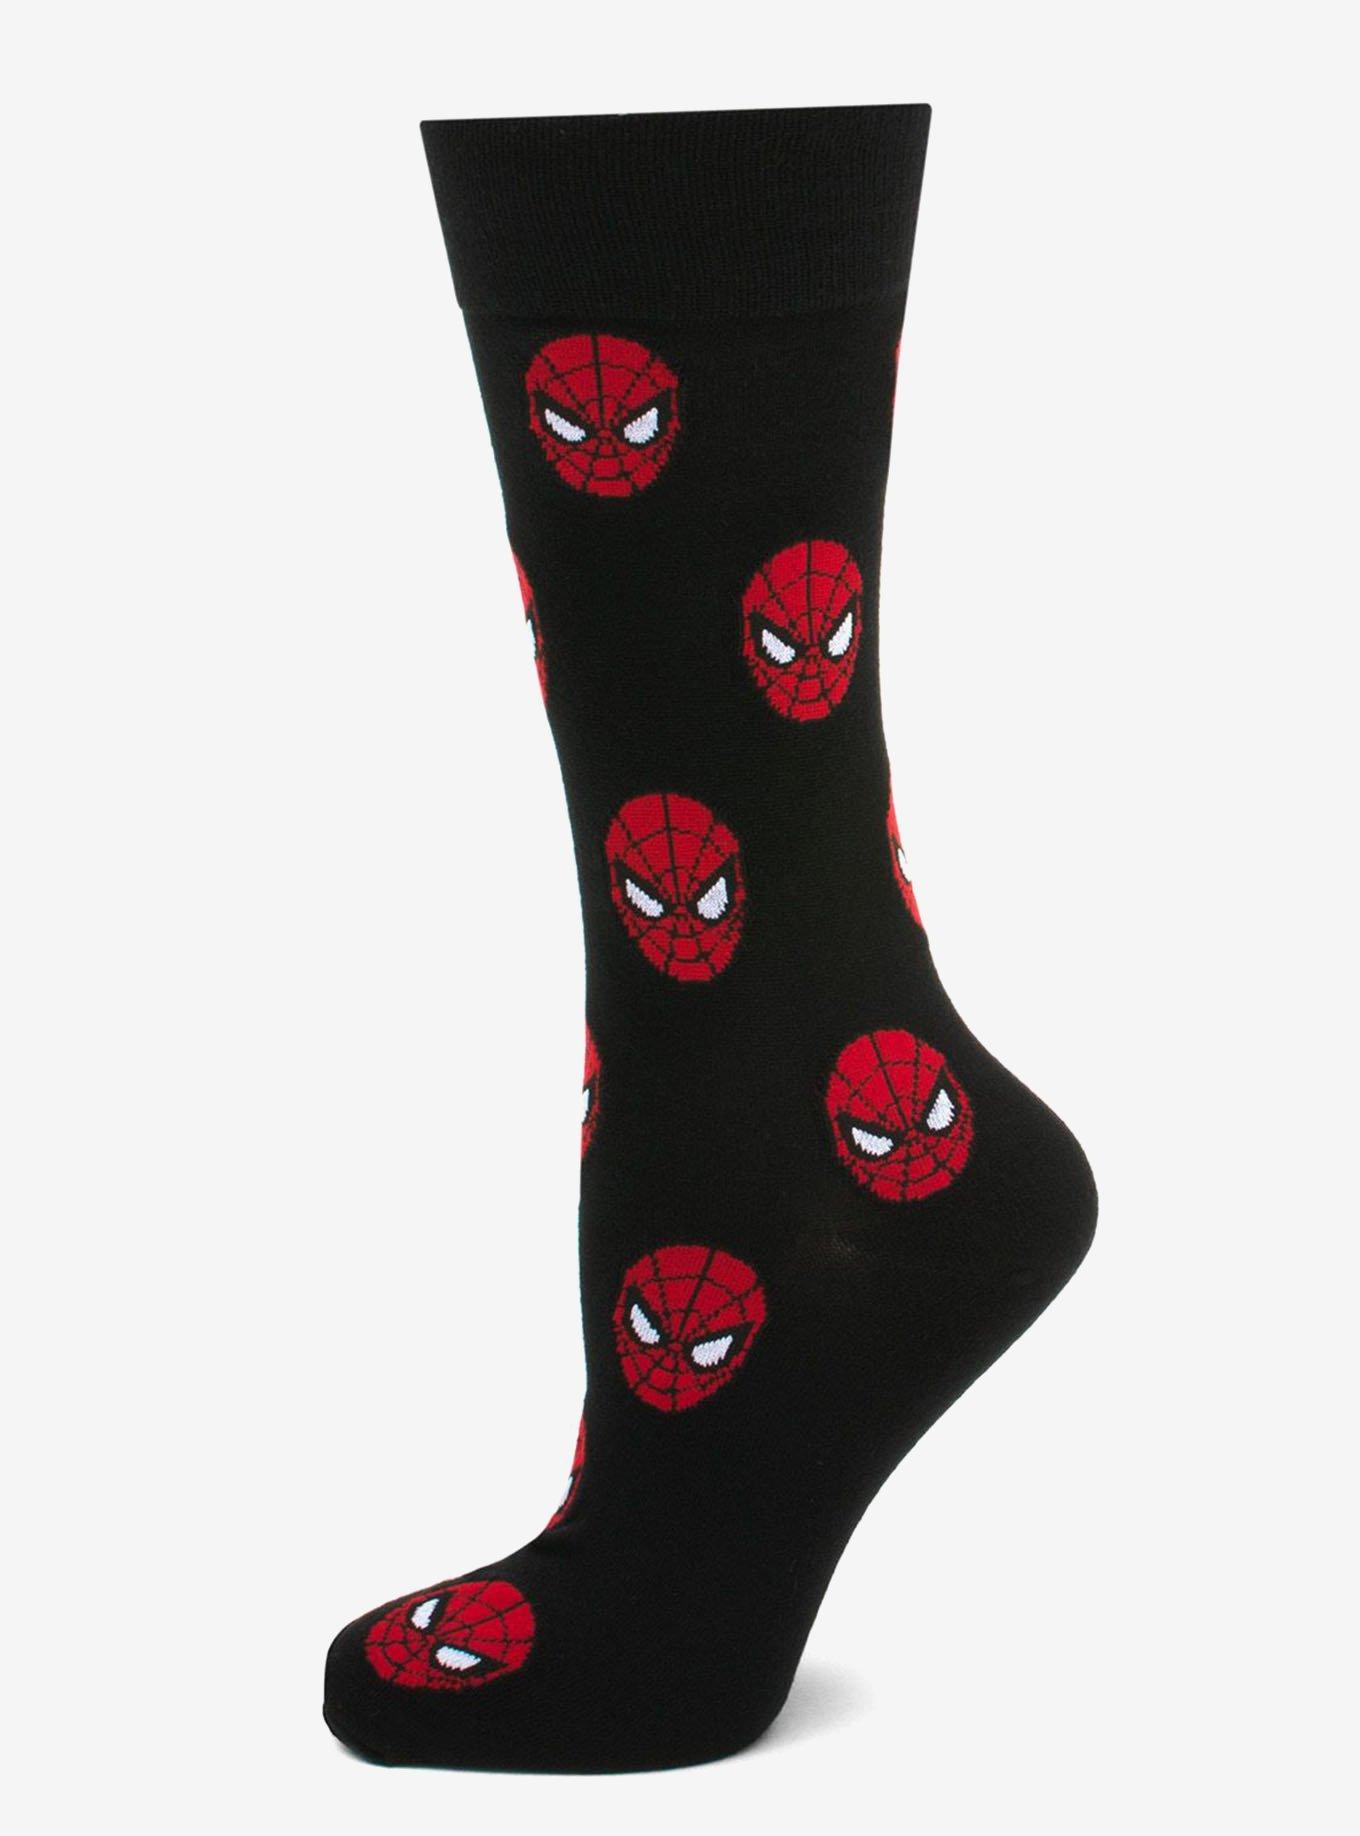 Marvel Avengers Favorite 3 Pair Socks Gift Set, , alternate